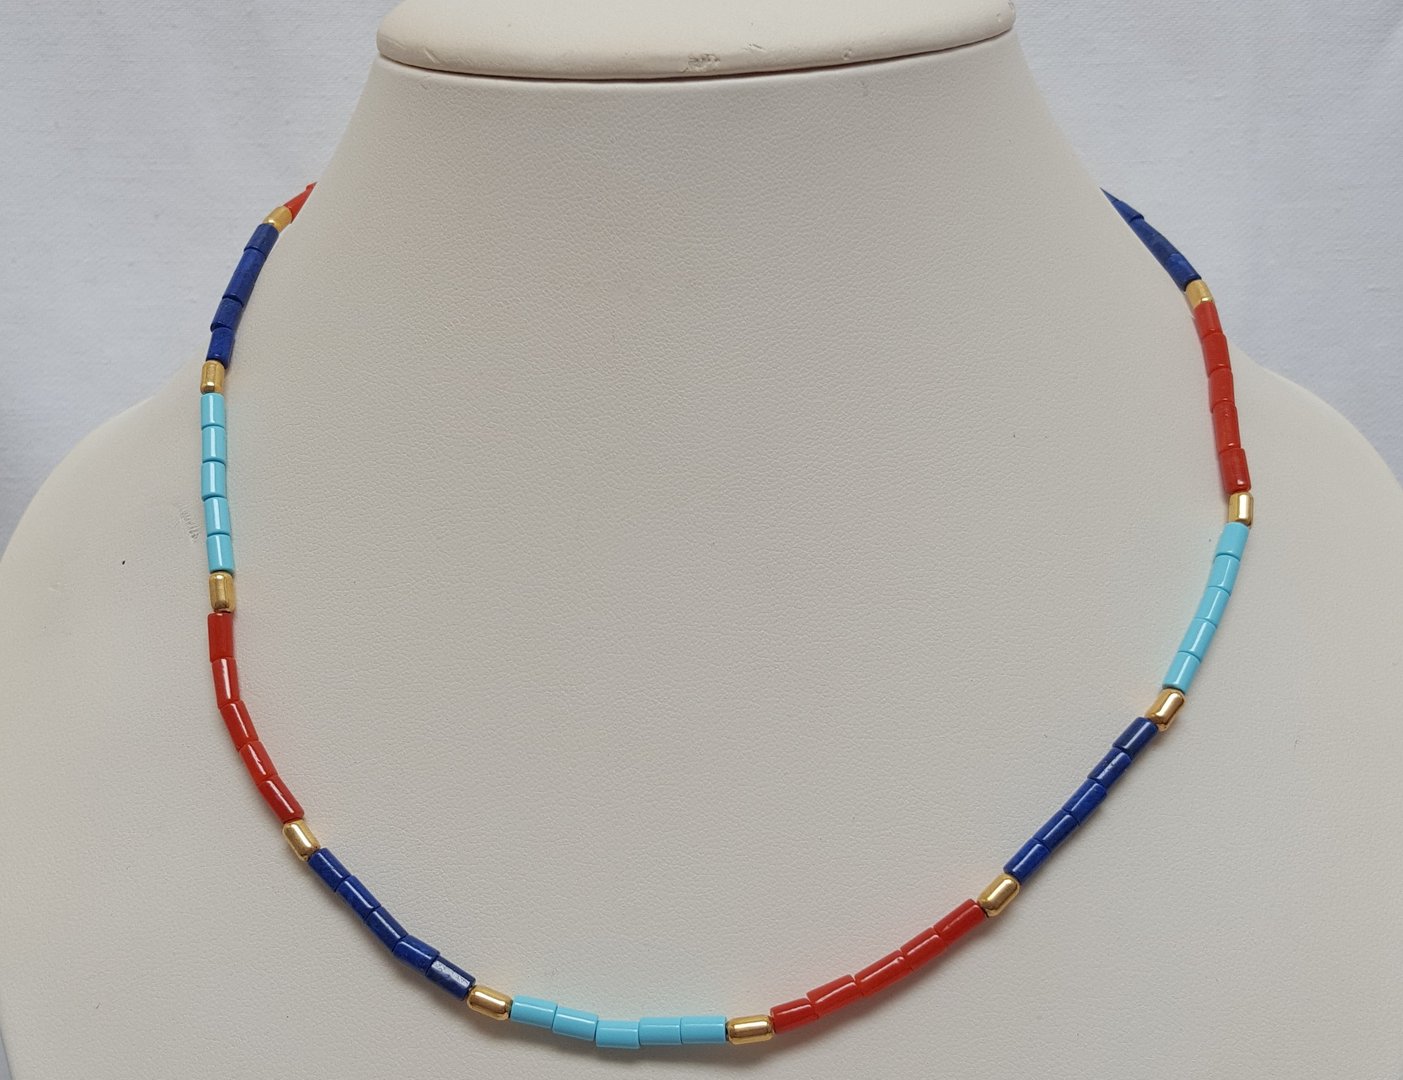 CORAIL ROUGE DE MEDITERRANEE, LAPIS LAZULI, TURQUOISE - collier en perles forme tube